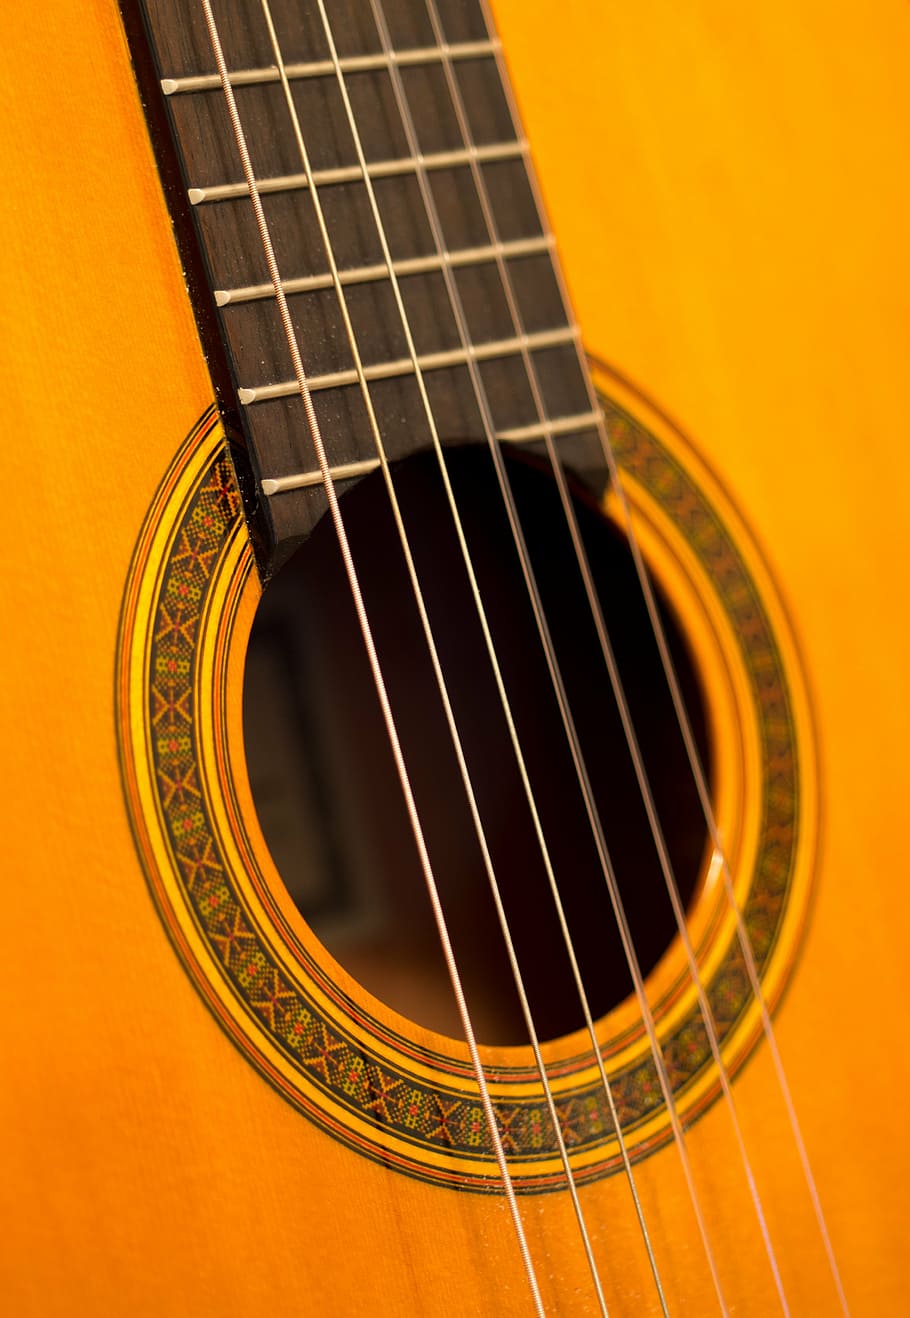 fotografia de close-up, corda de violão, violão, guitarra clássica, música, instrumento, musical, acústico, espanhol, cordas